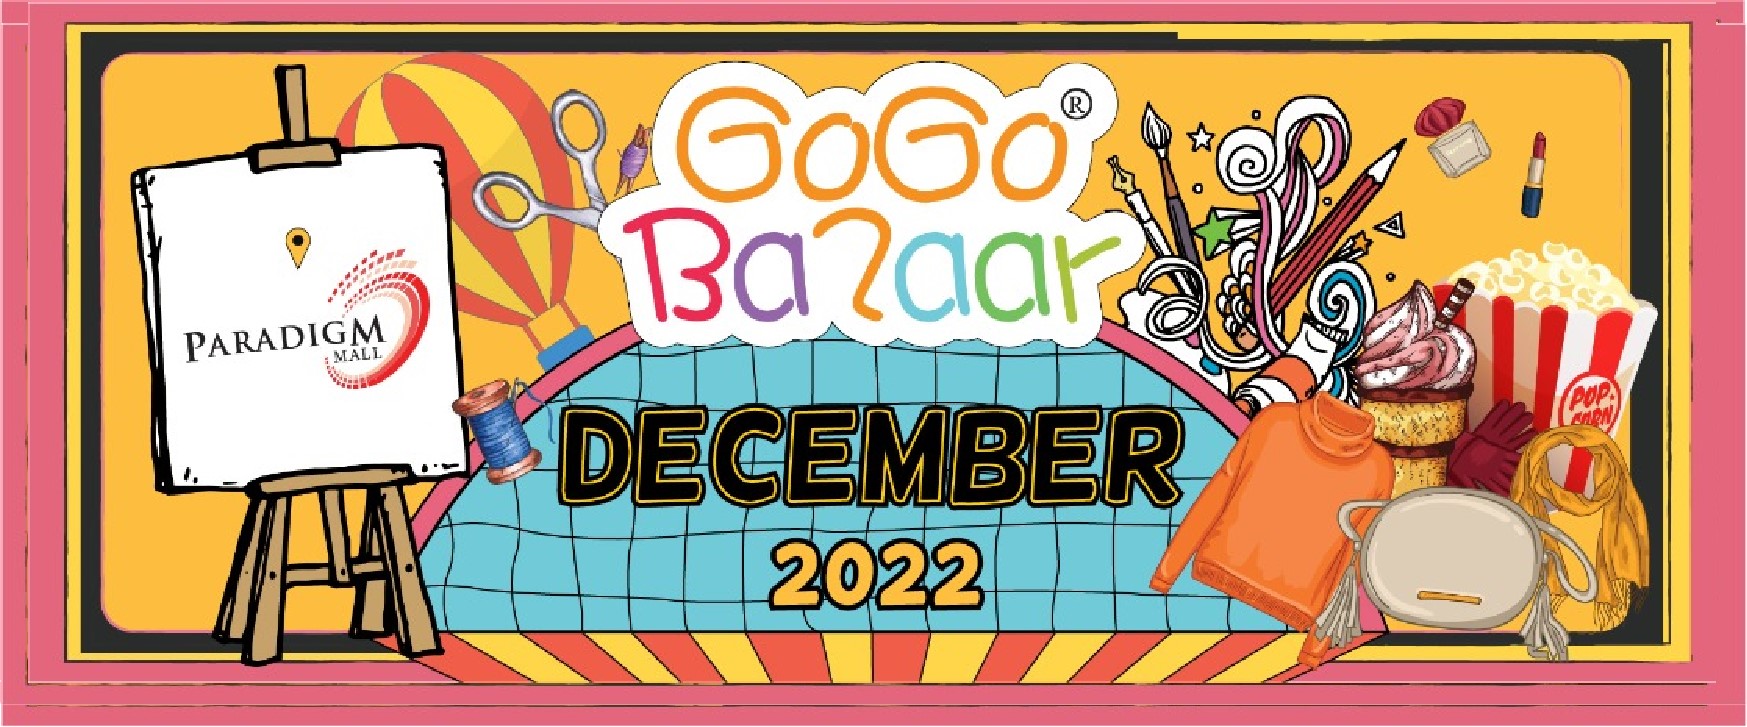 DECEMBER 2022 WEEKEND GOGO BAZAAR – PARADIGM MALL LG & G FLOOR